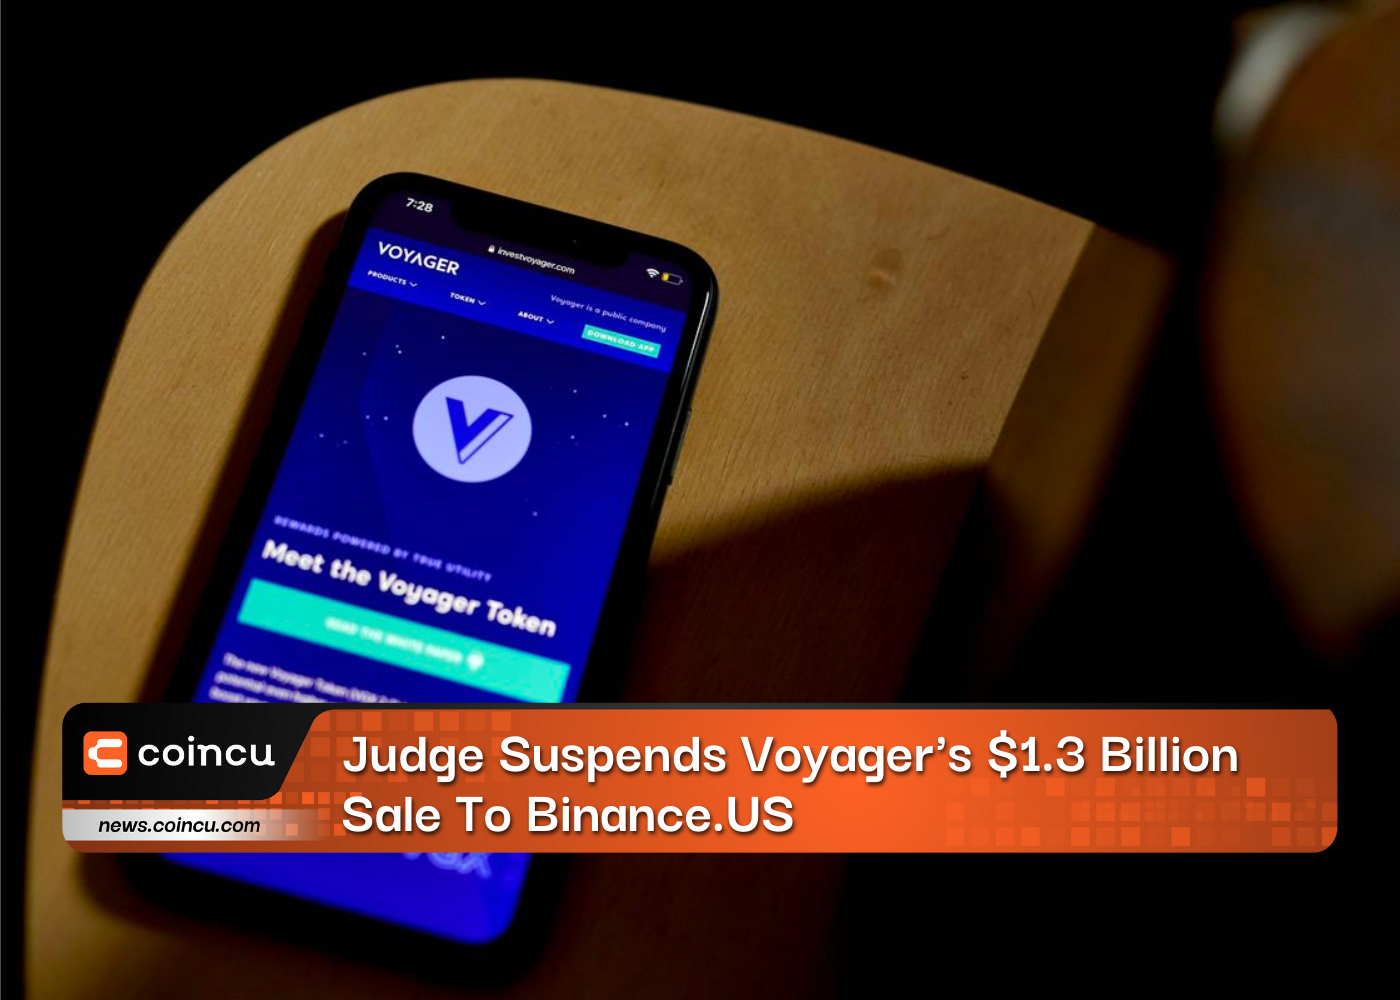 Judge Suspends Voyager's $1.3 Billion Sale To Binance.US